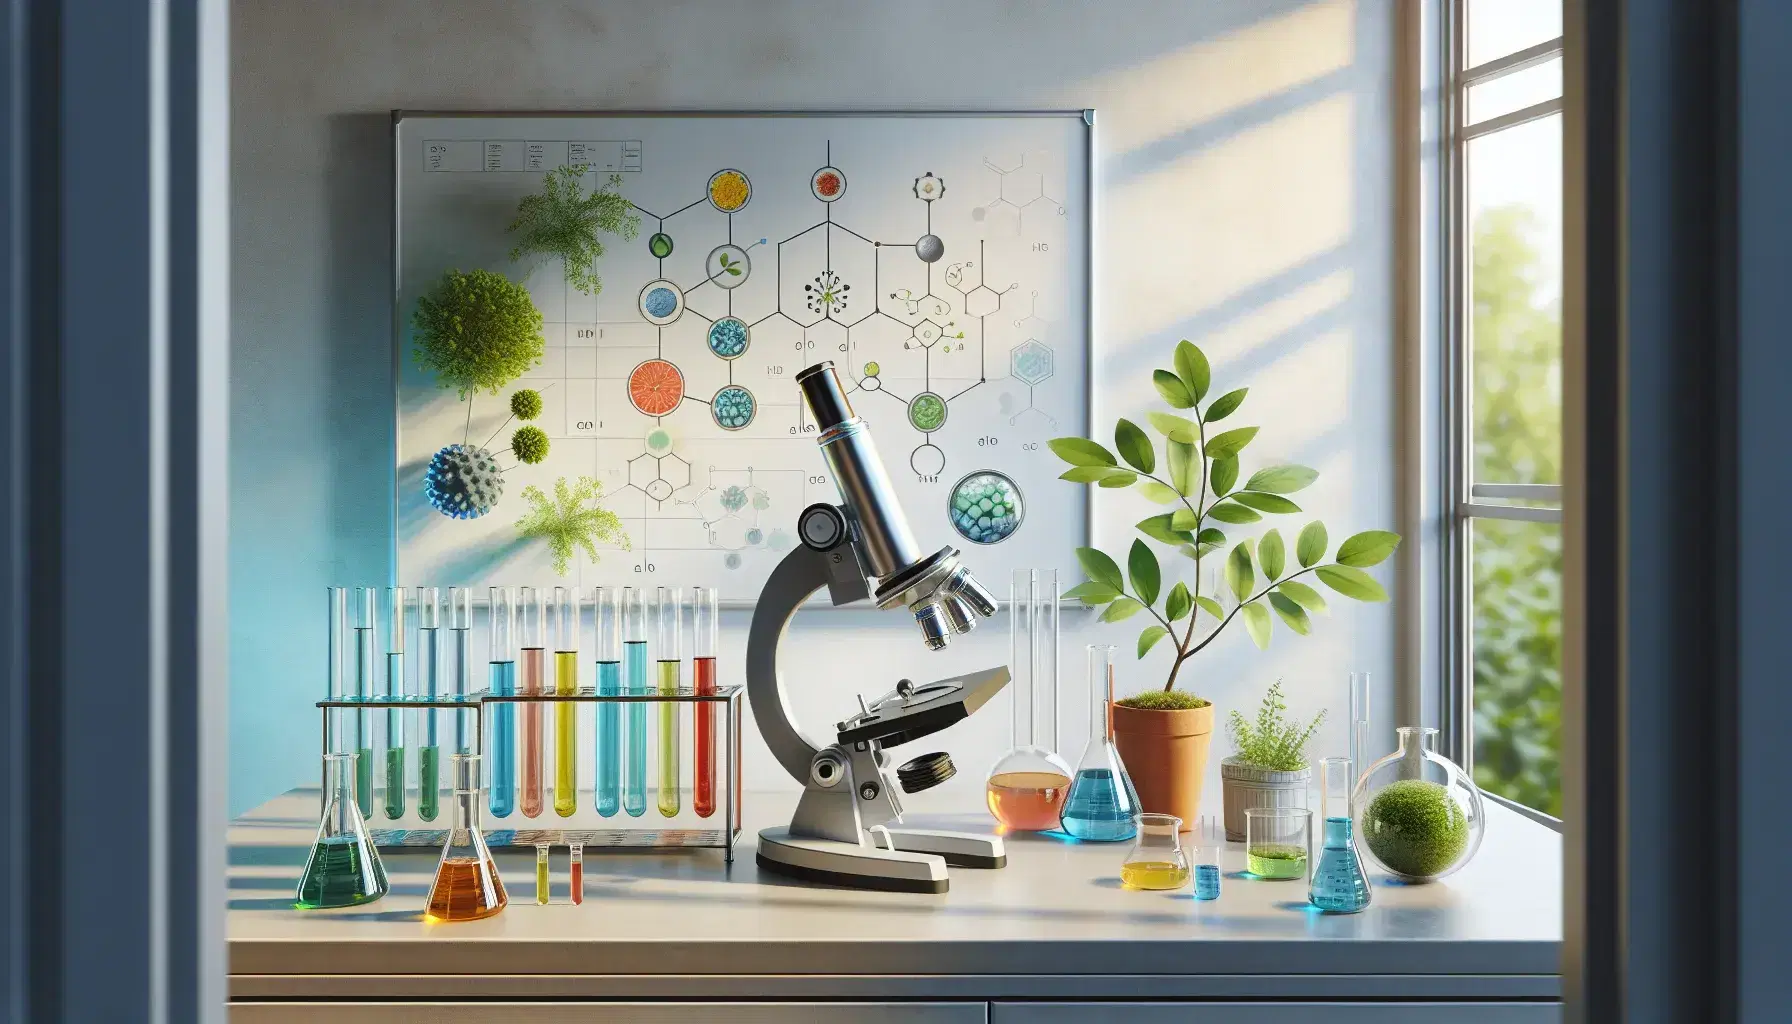 Microscopio plateado en laboratorio con tubos de ensayo de colores, planta en maceta y elementos de seguridad sobre mesa iluminada naturalmente.